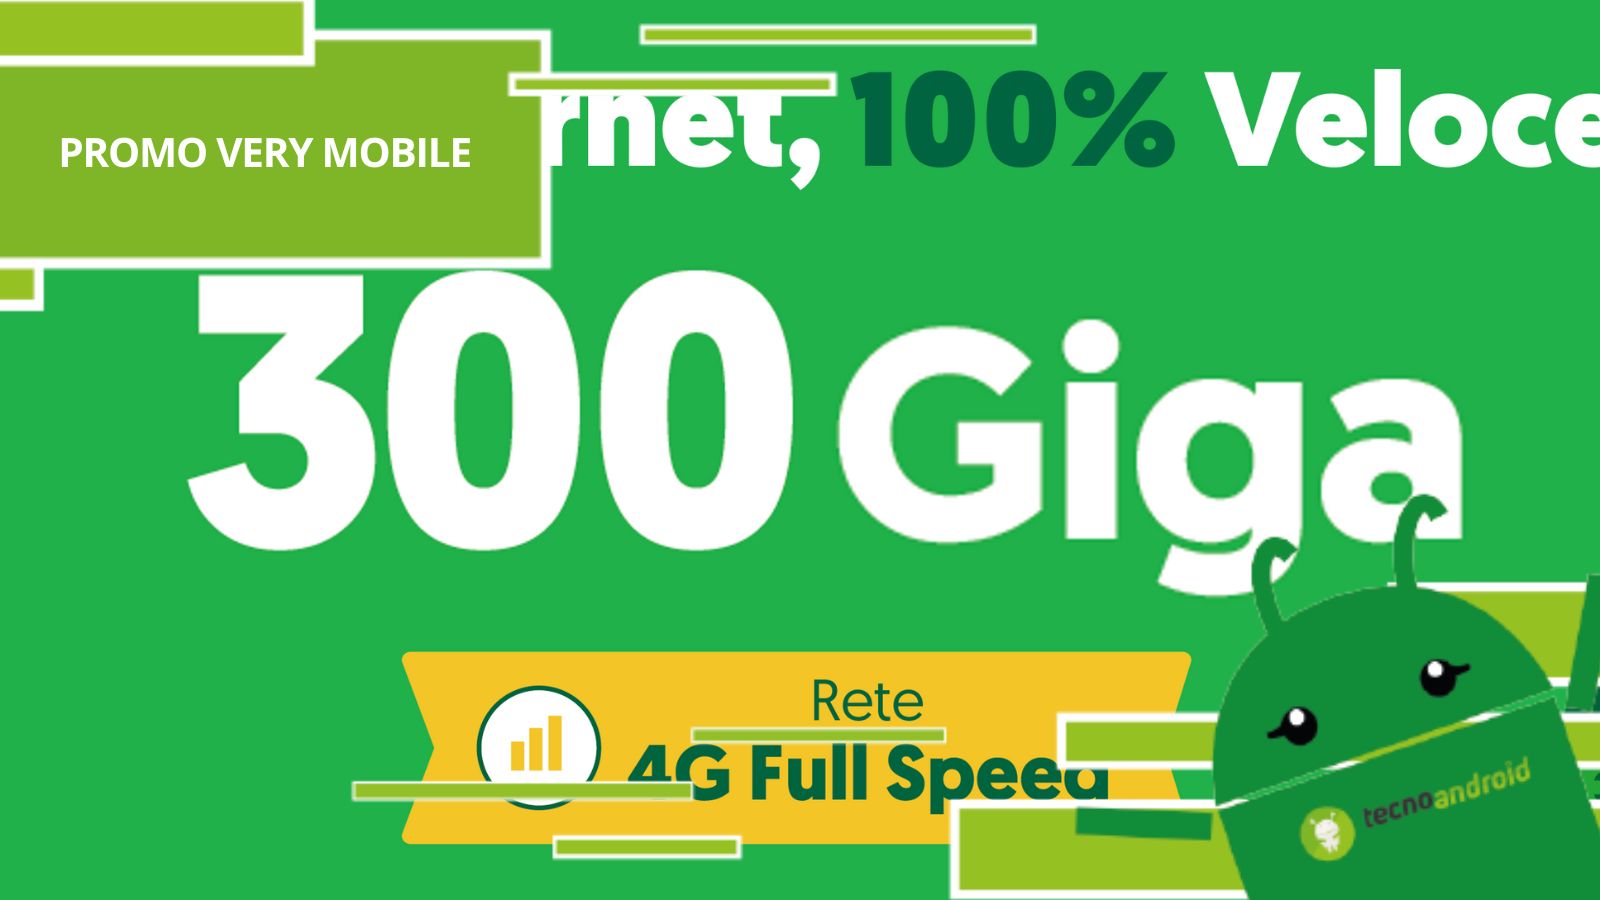 Very 4G Full Speed, con questa promo Very Mobile si è superata